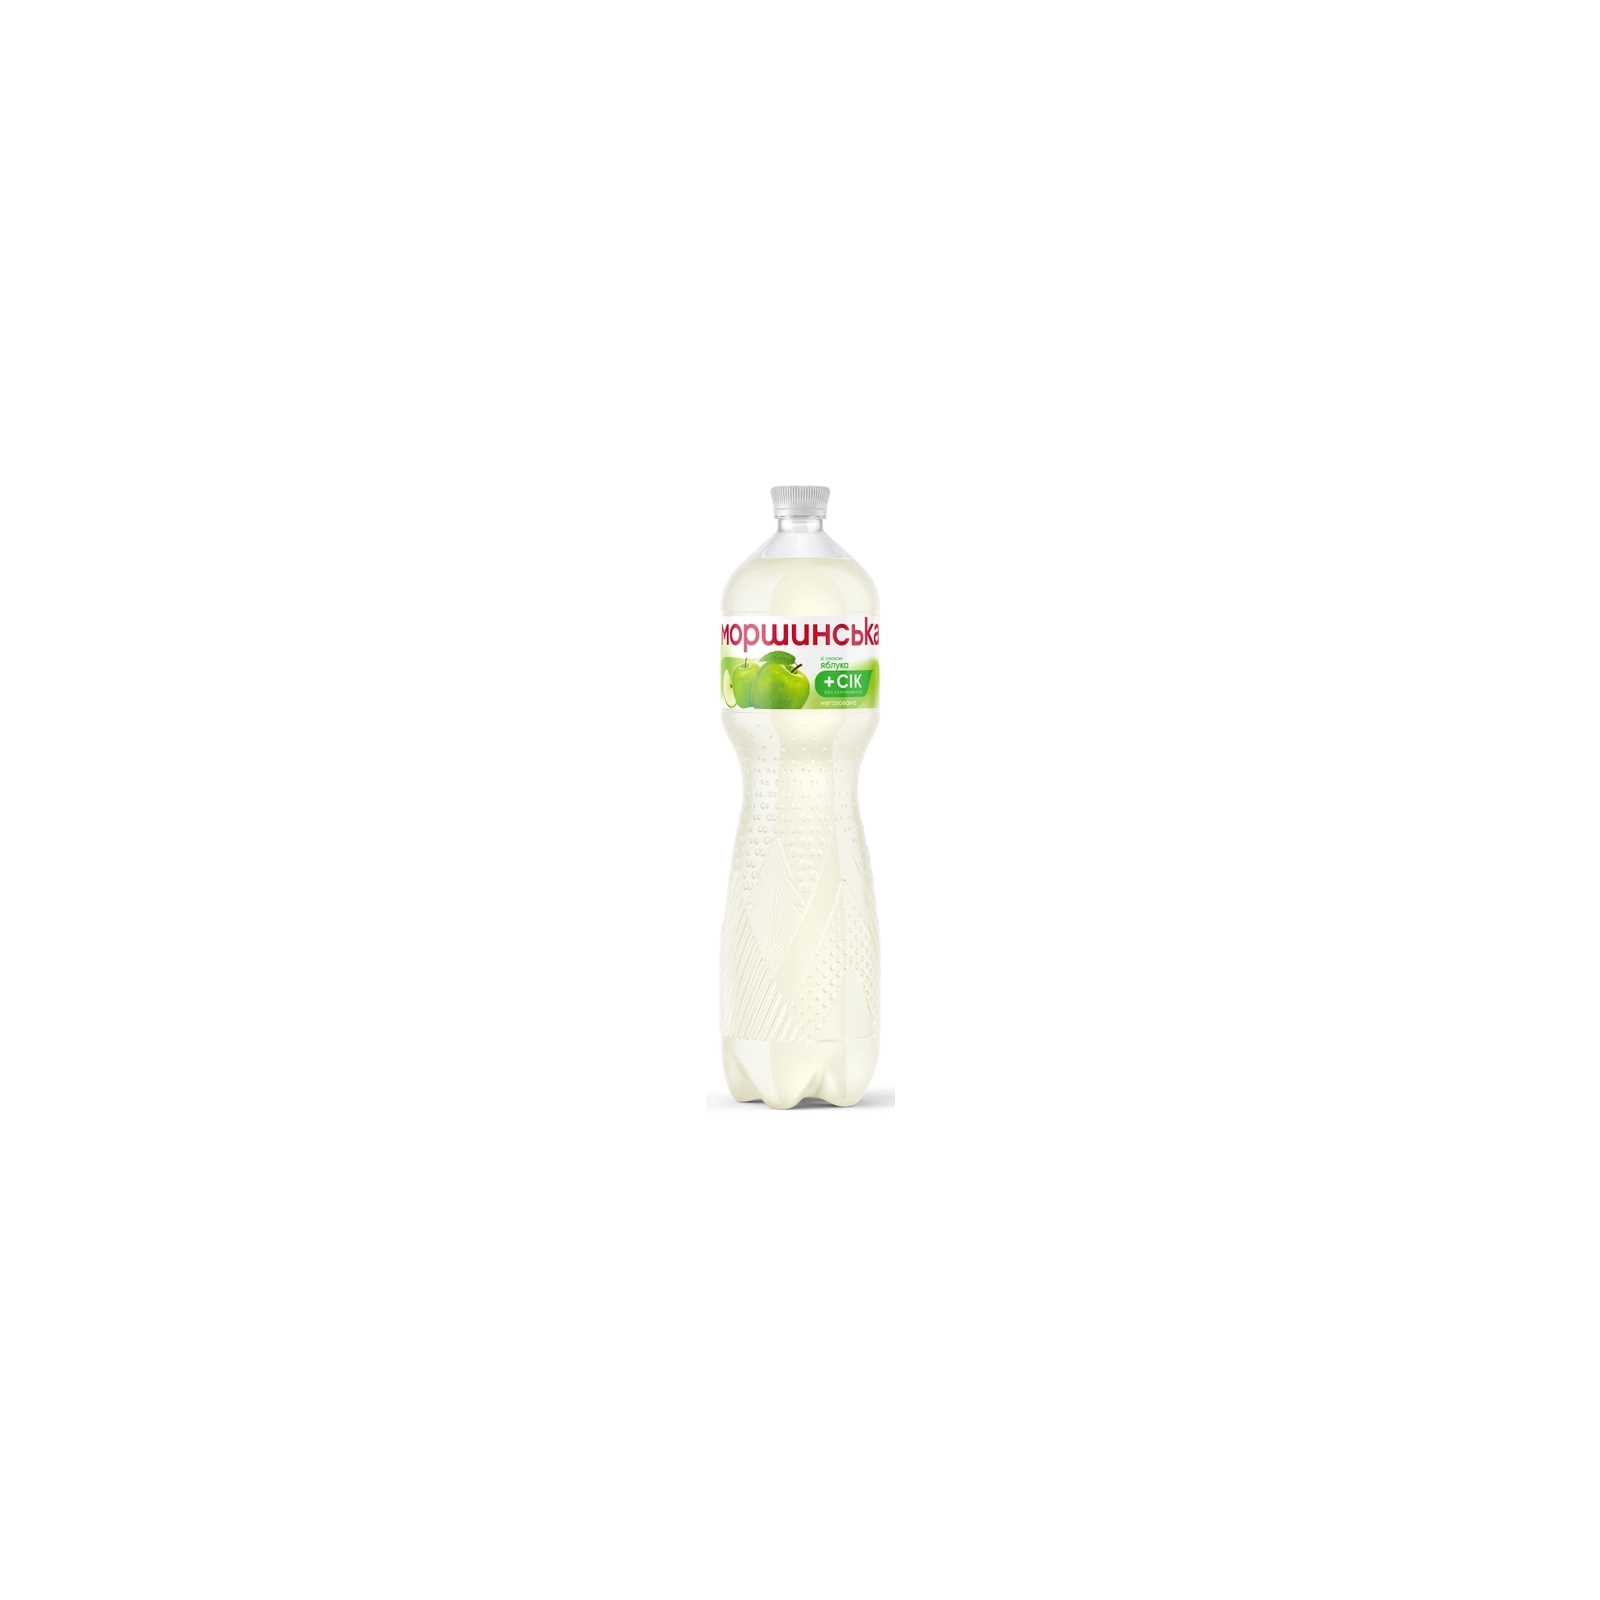 Напиток Моршинська сокосодержащий негазированный со вкусом яблоки 1.5 л (4820017002608) изображение 2